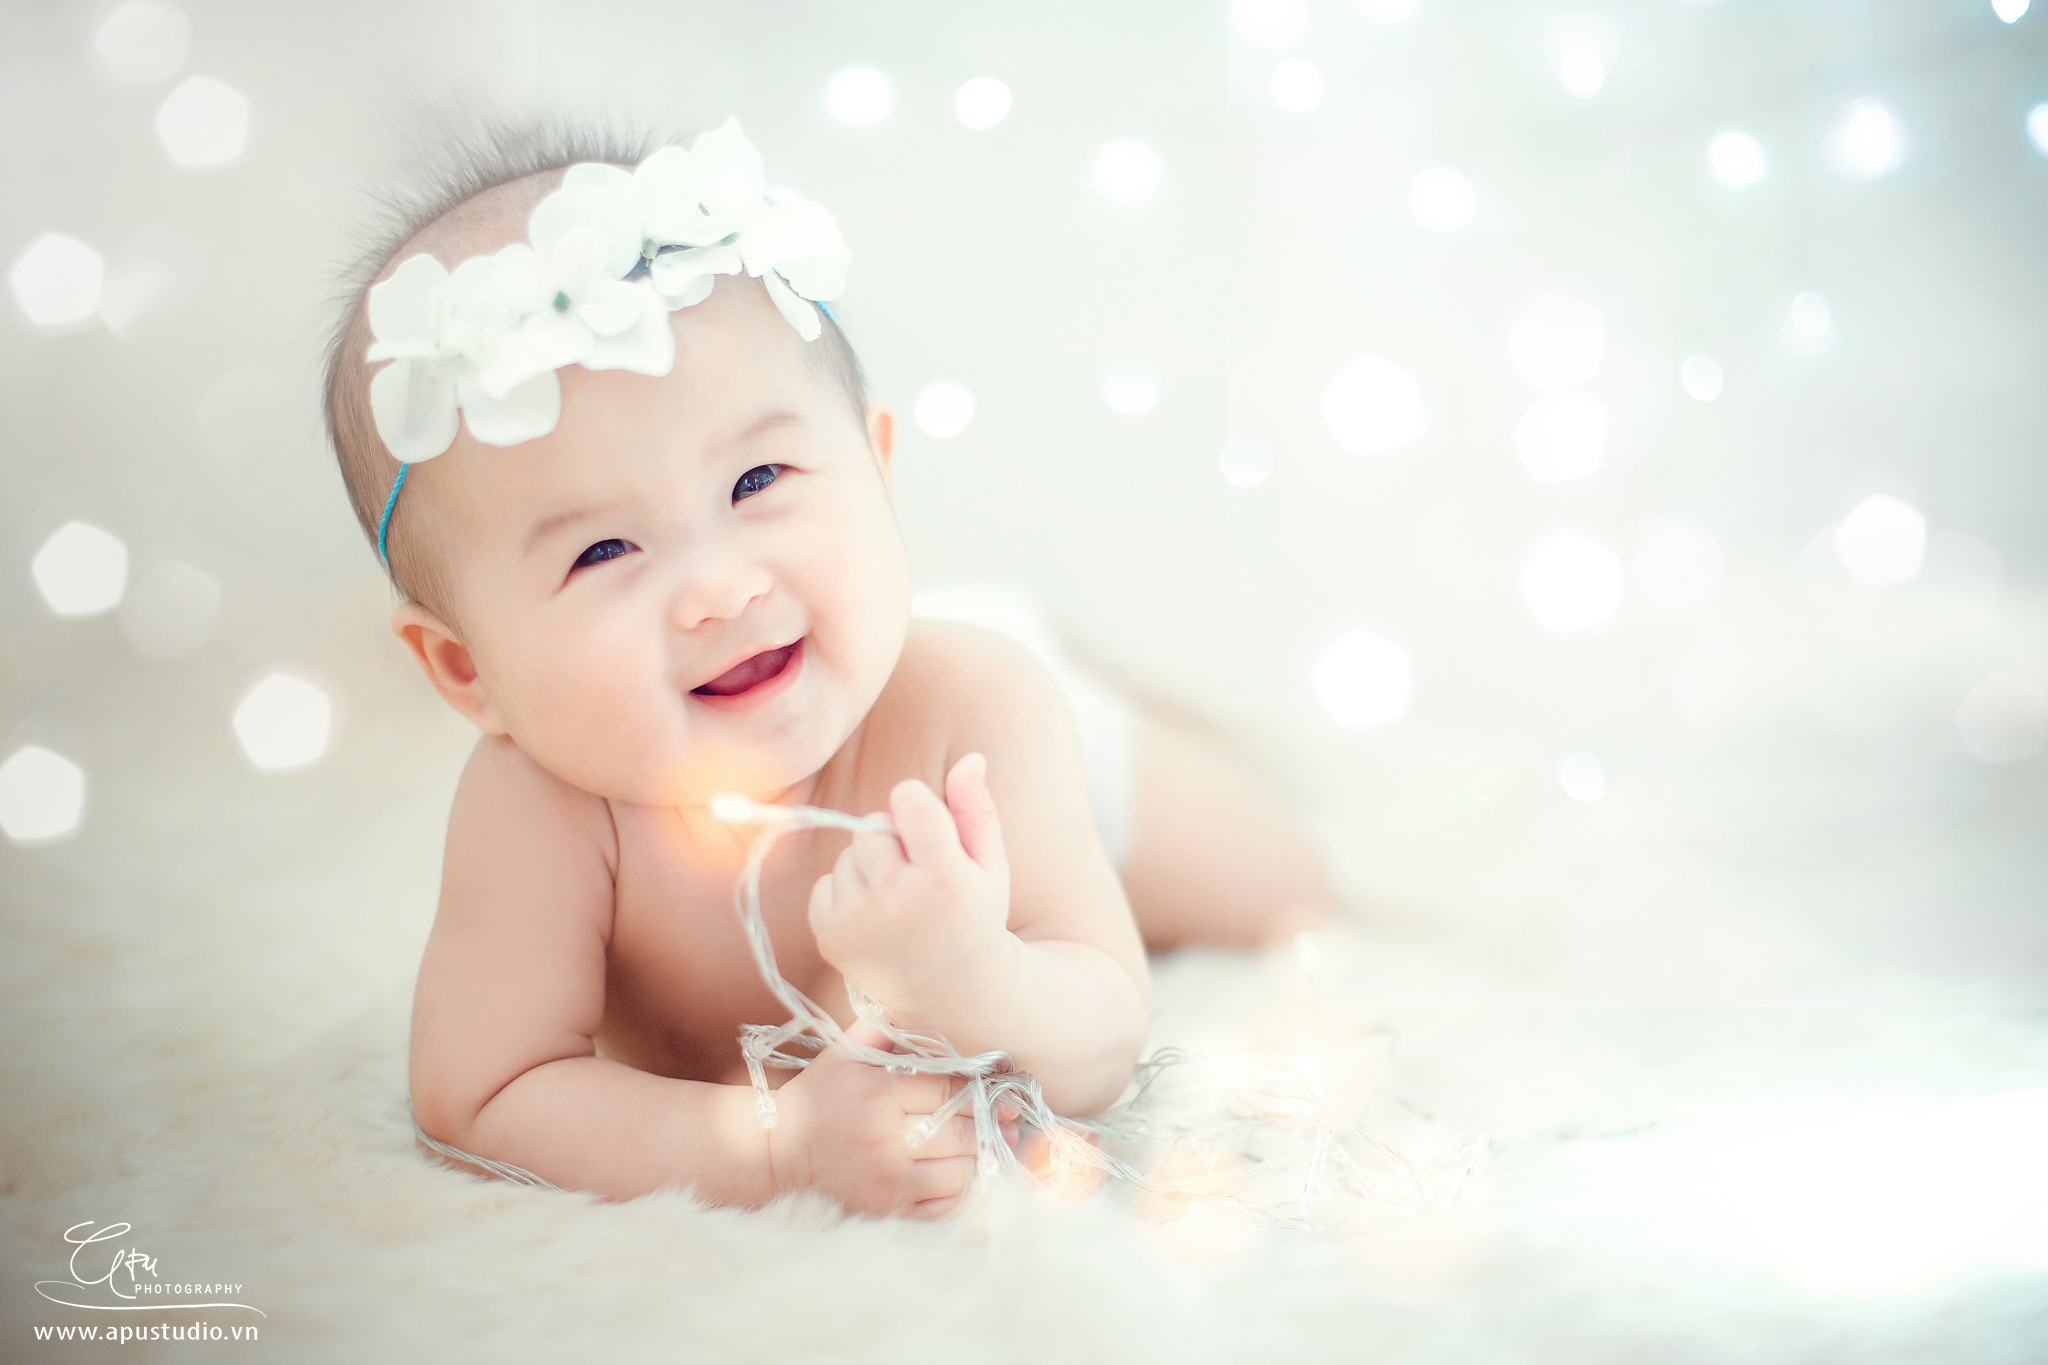 100 - 1 hình ảnh em bé dễ thương như thiên thần